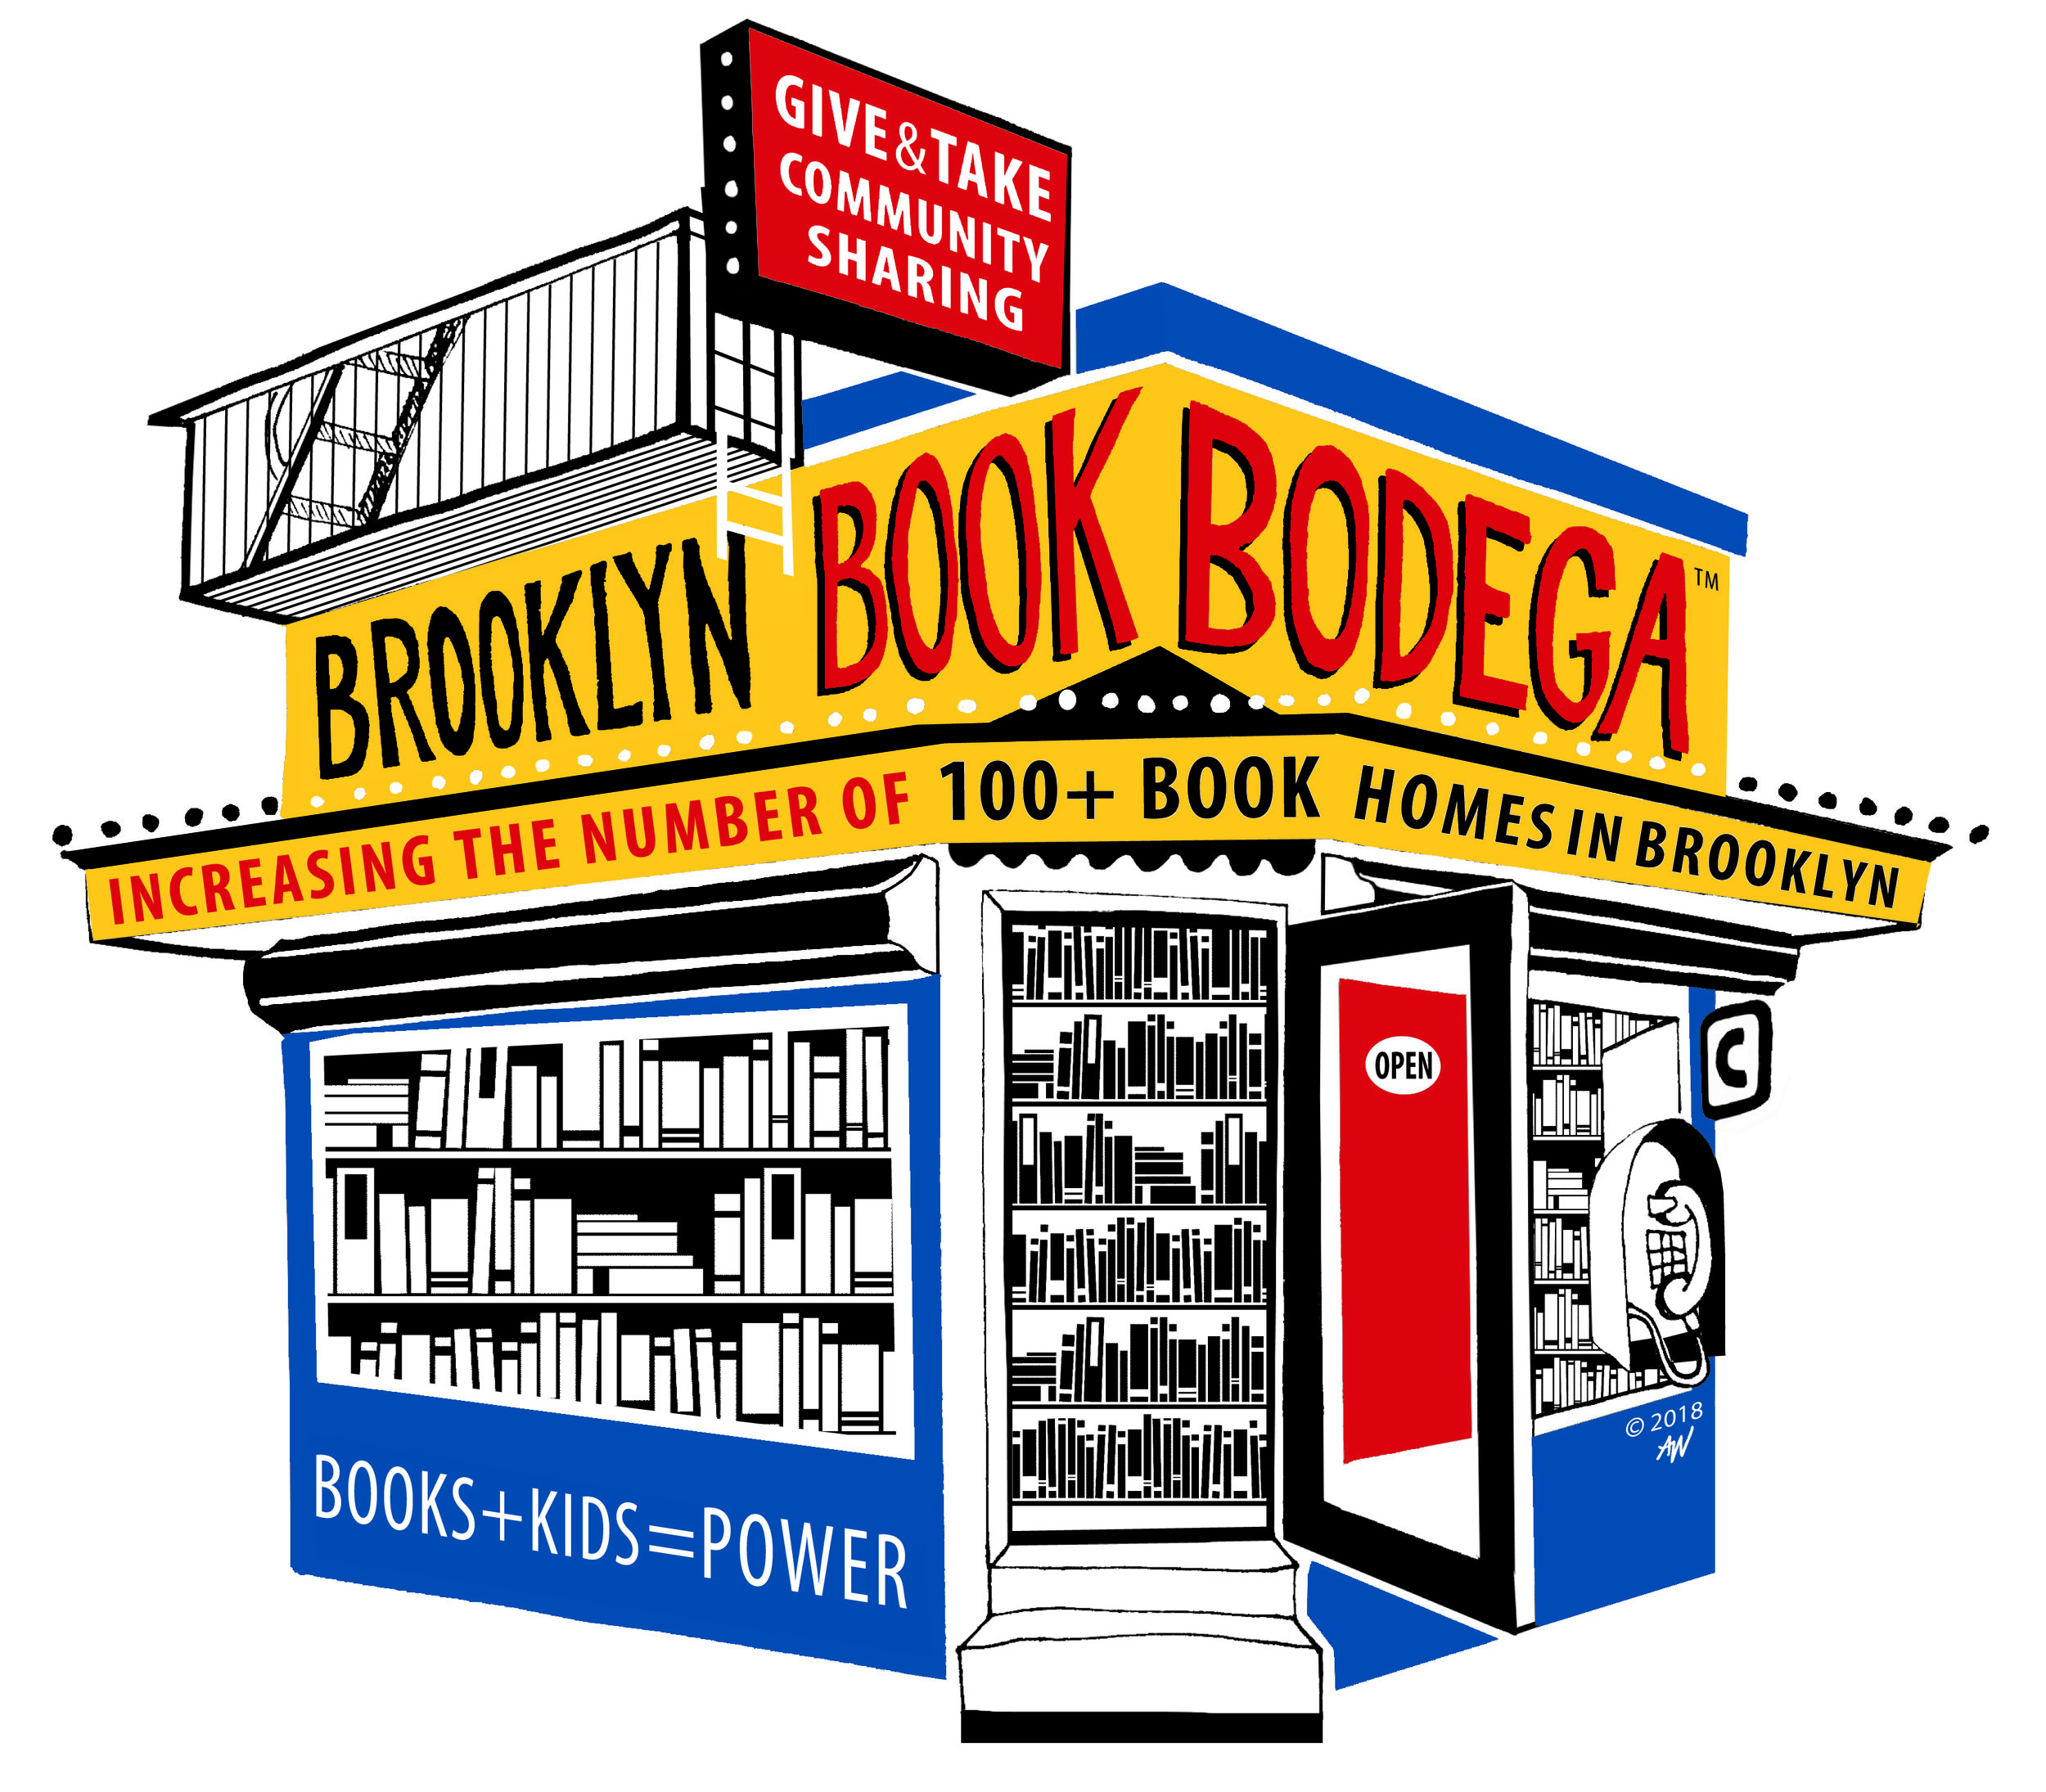 Brooklyn Book Bodega